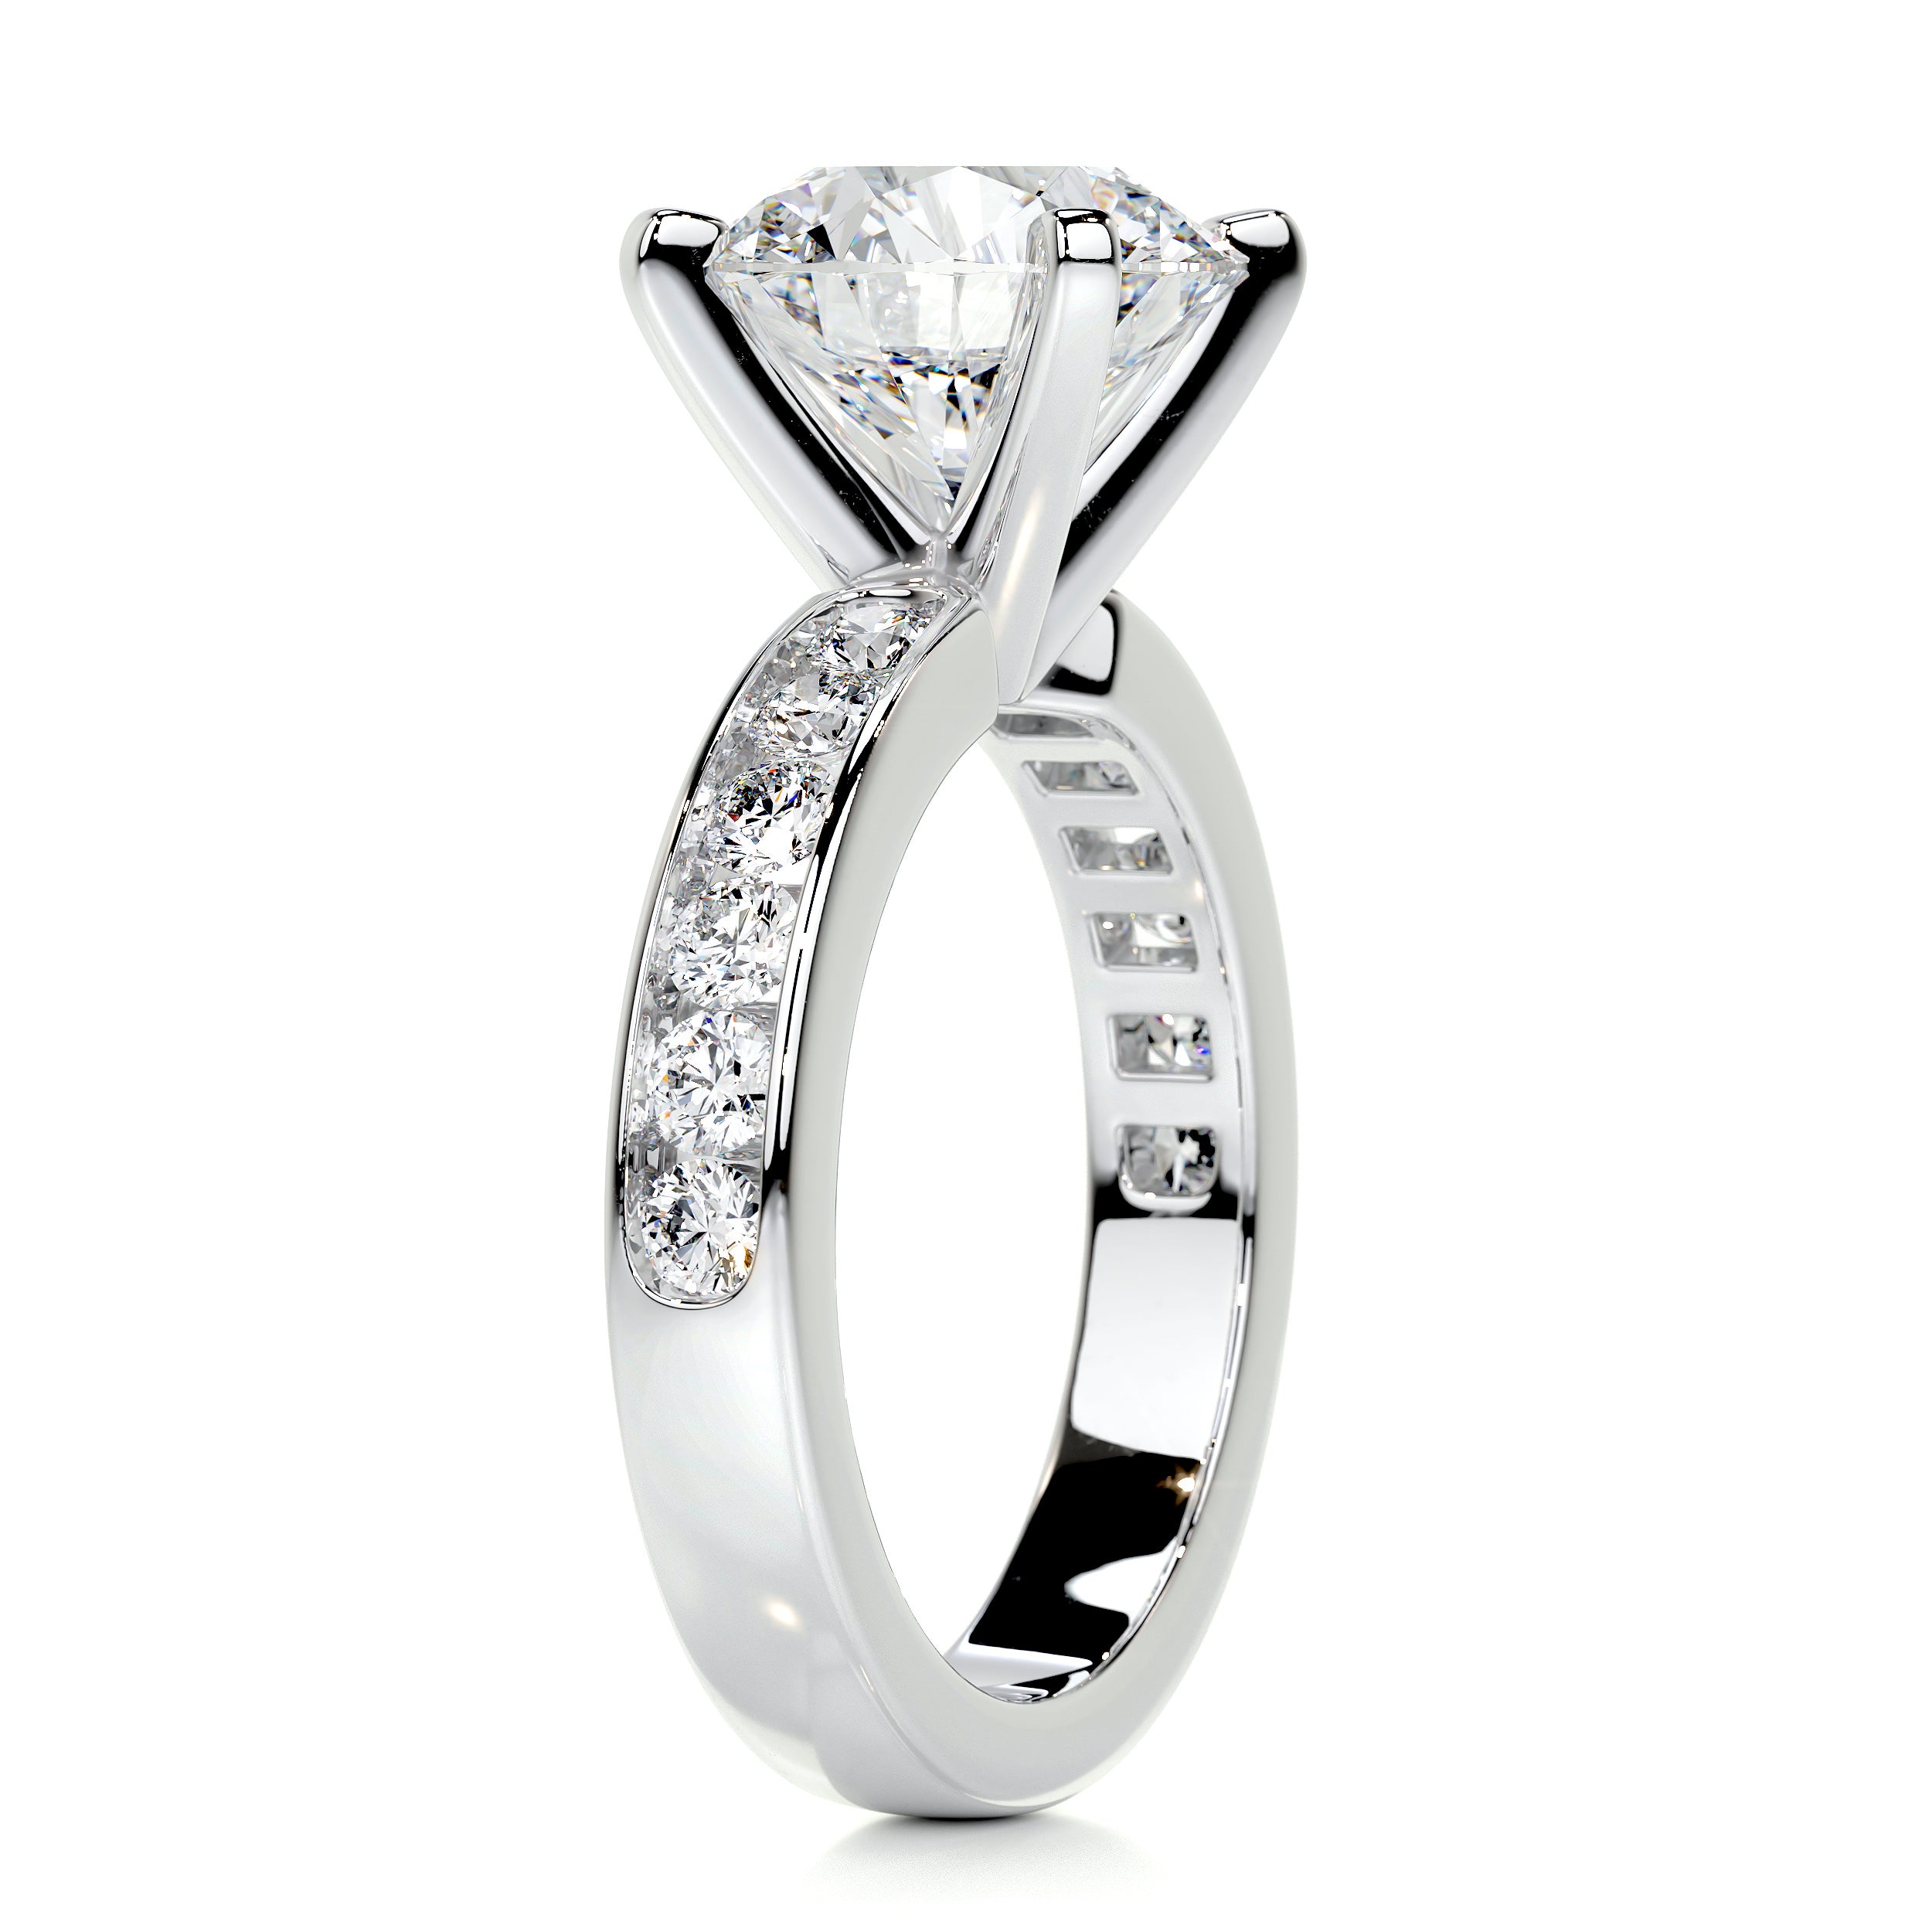 Giselle Diamond Engagement Ring -14K White Gold